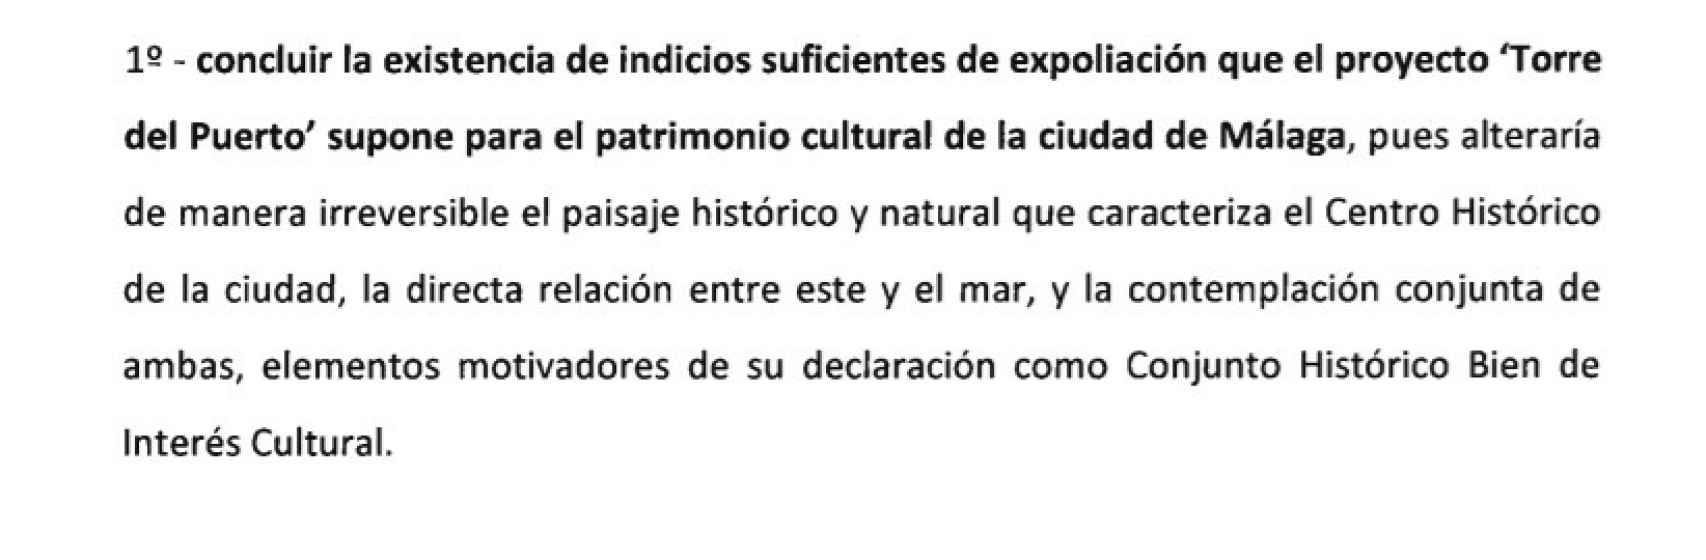 Detalle de una de las conclusiones recogidas en el informe de Cultura.